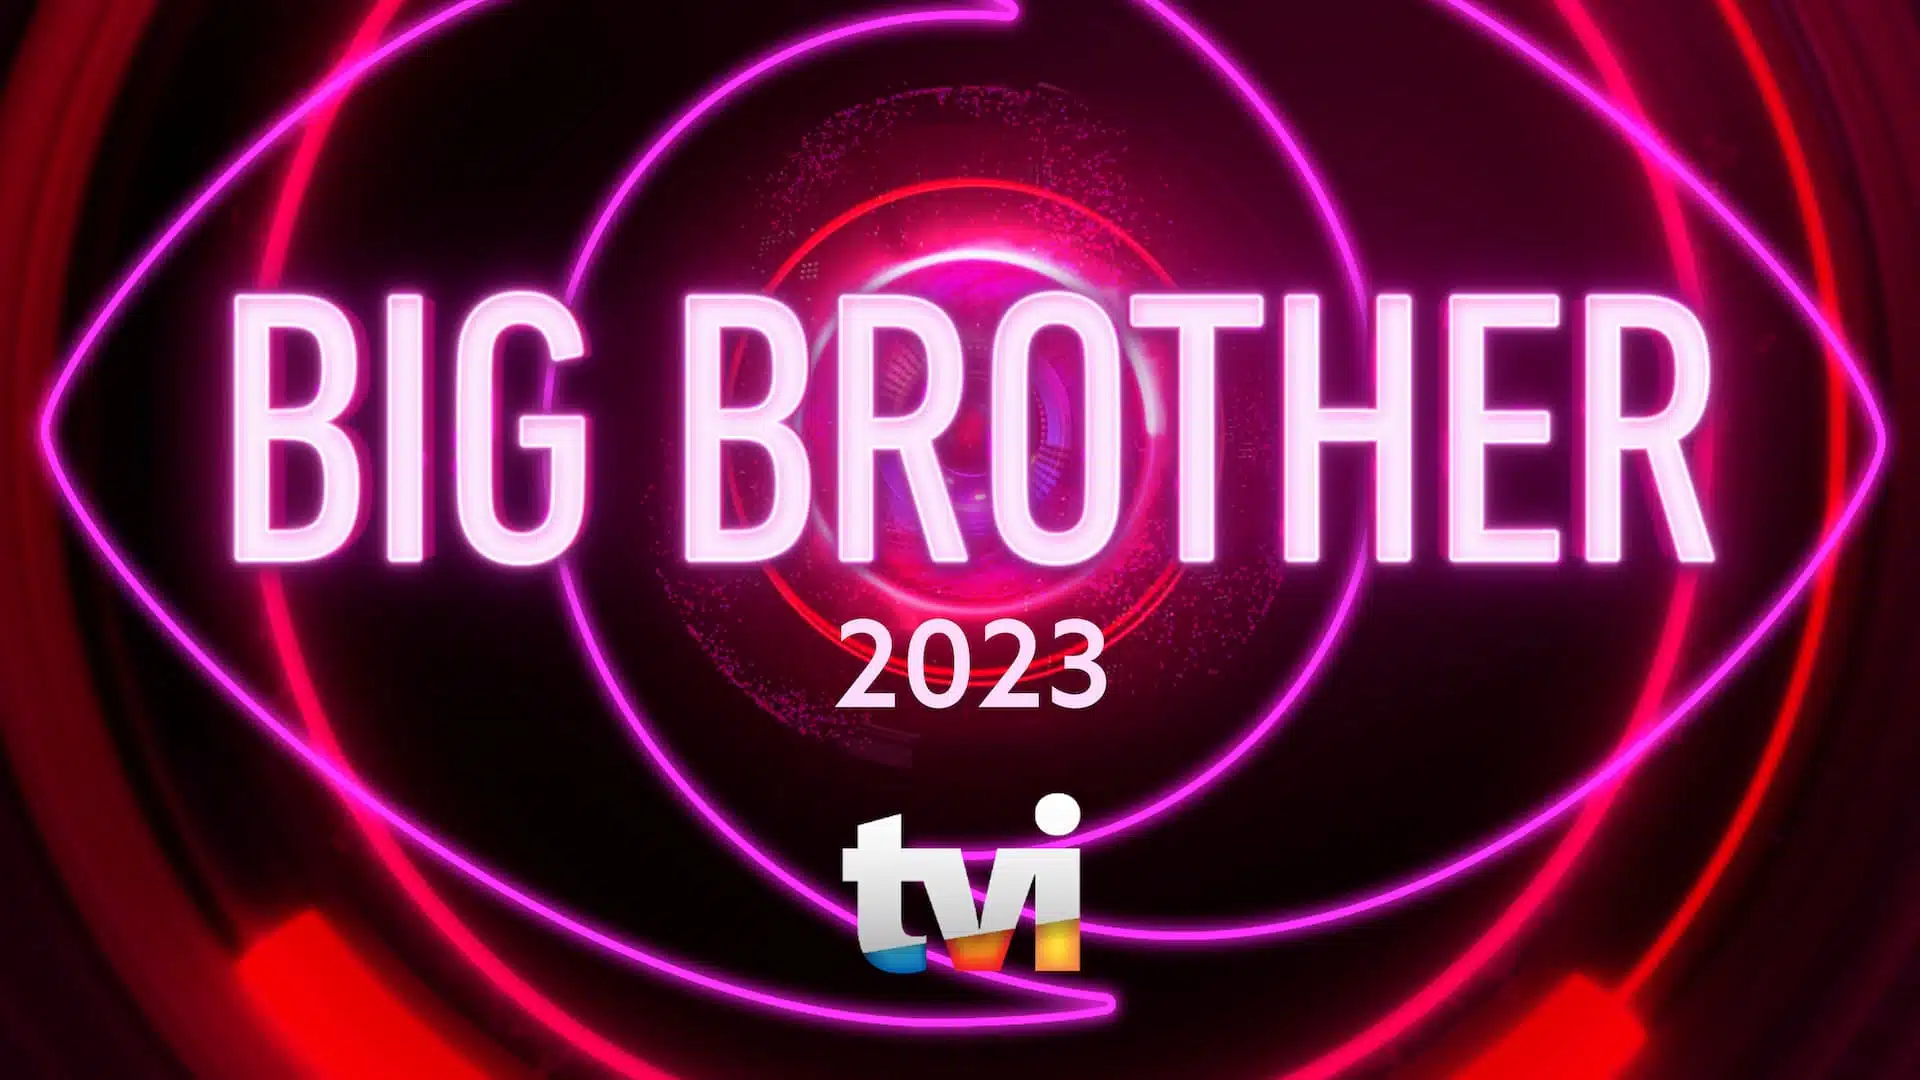 Big-Brother-2023-Tvi-Logo